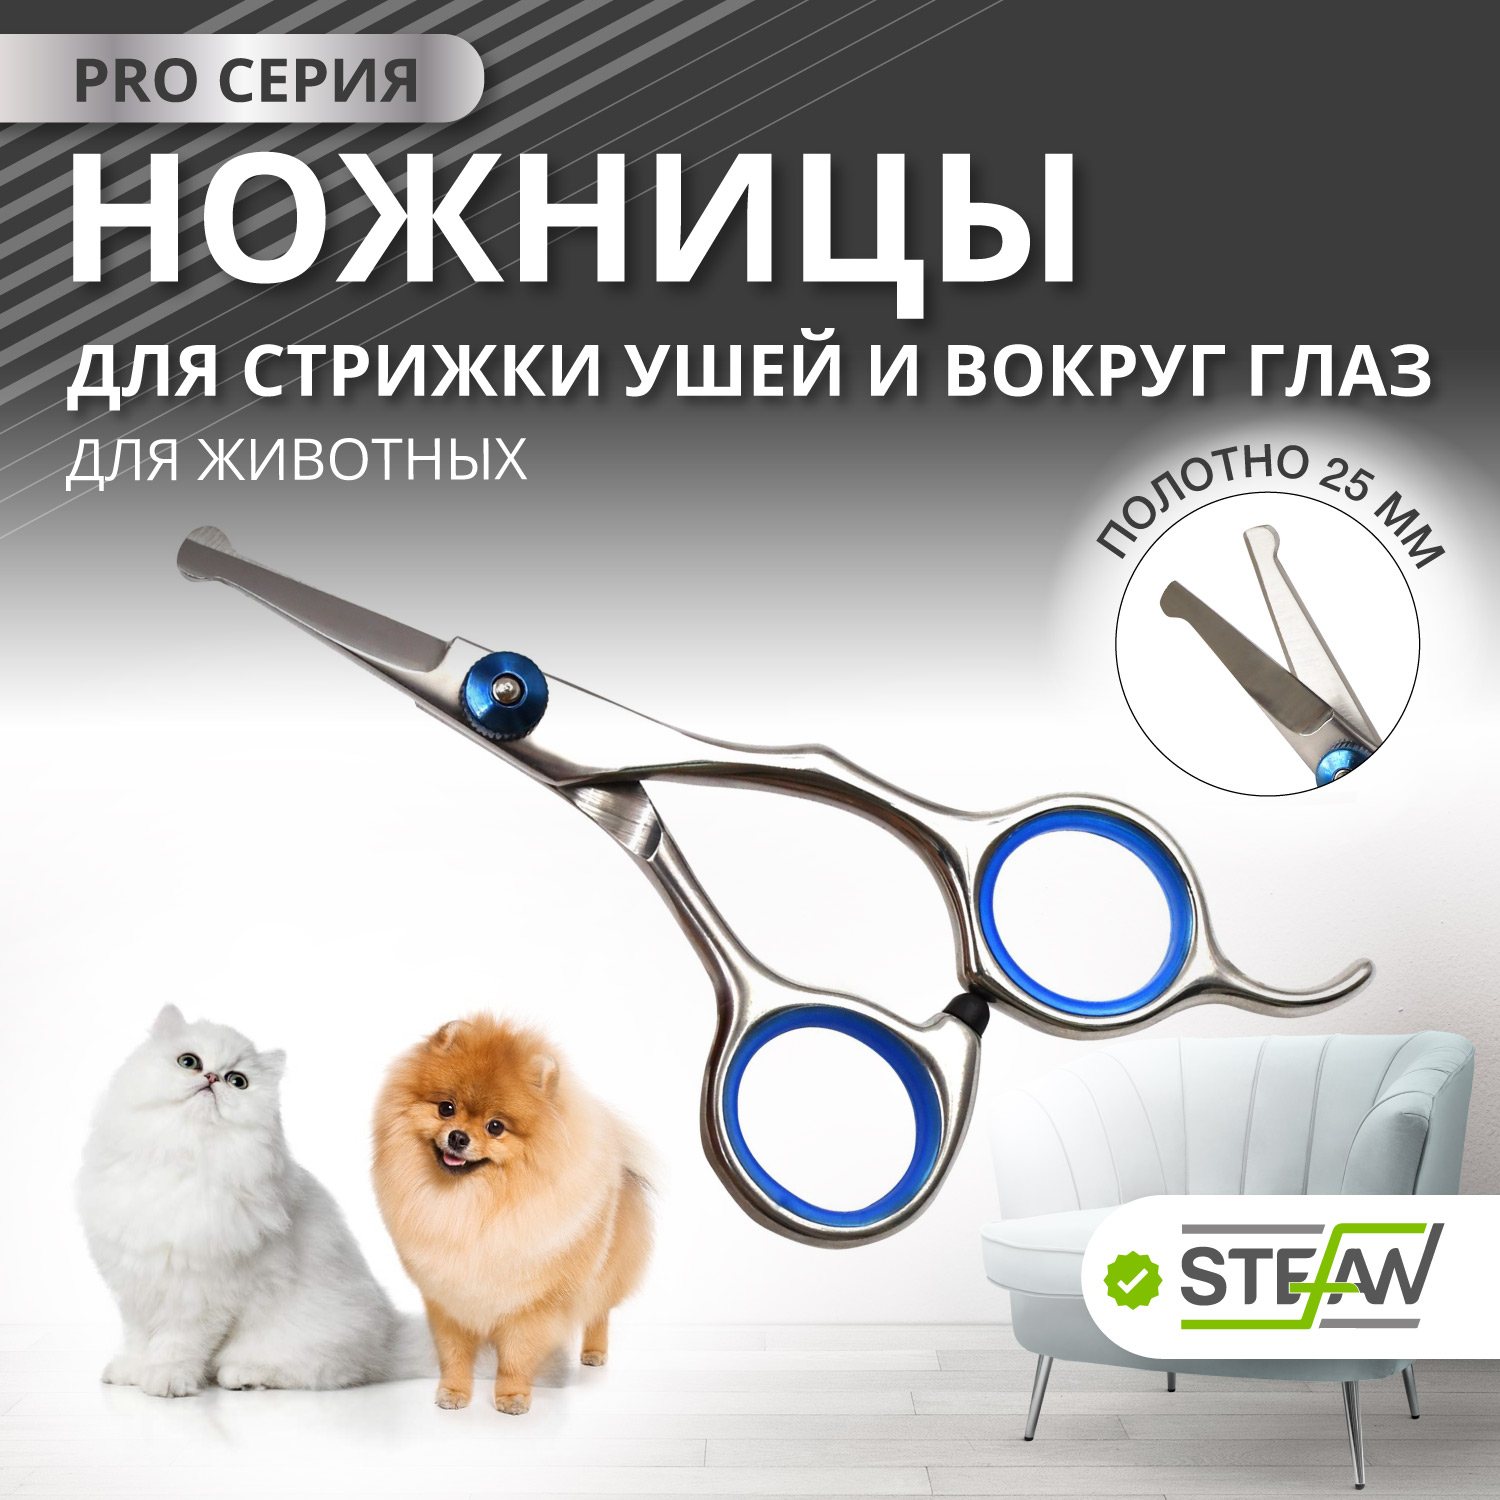 Ножницы PRO для стрижки ушей и вокруг глаз для груминга животных STEFAN, 25мм, GSE1125